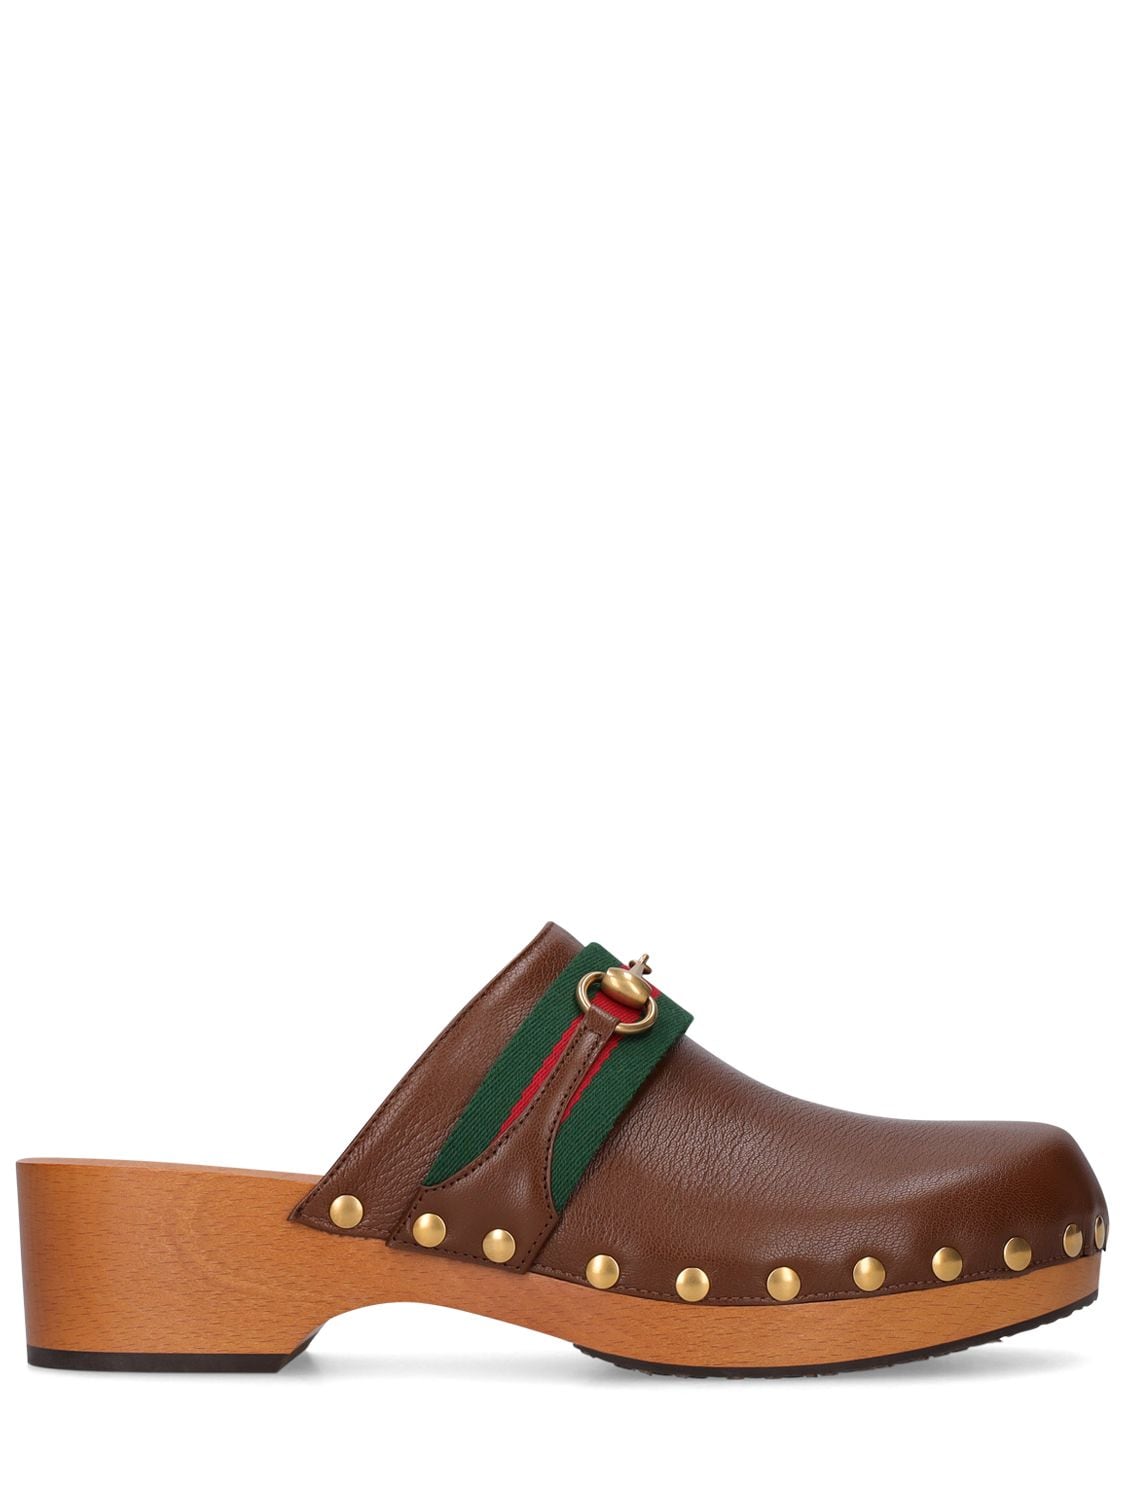 Image of Leather Slide Sandals